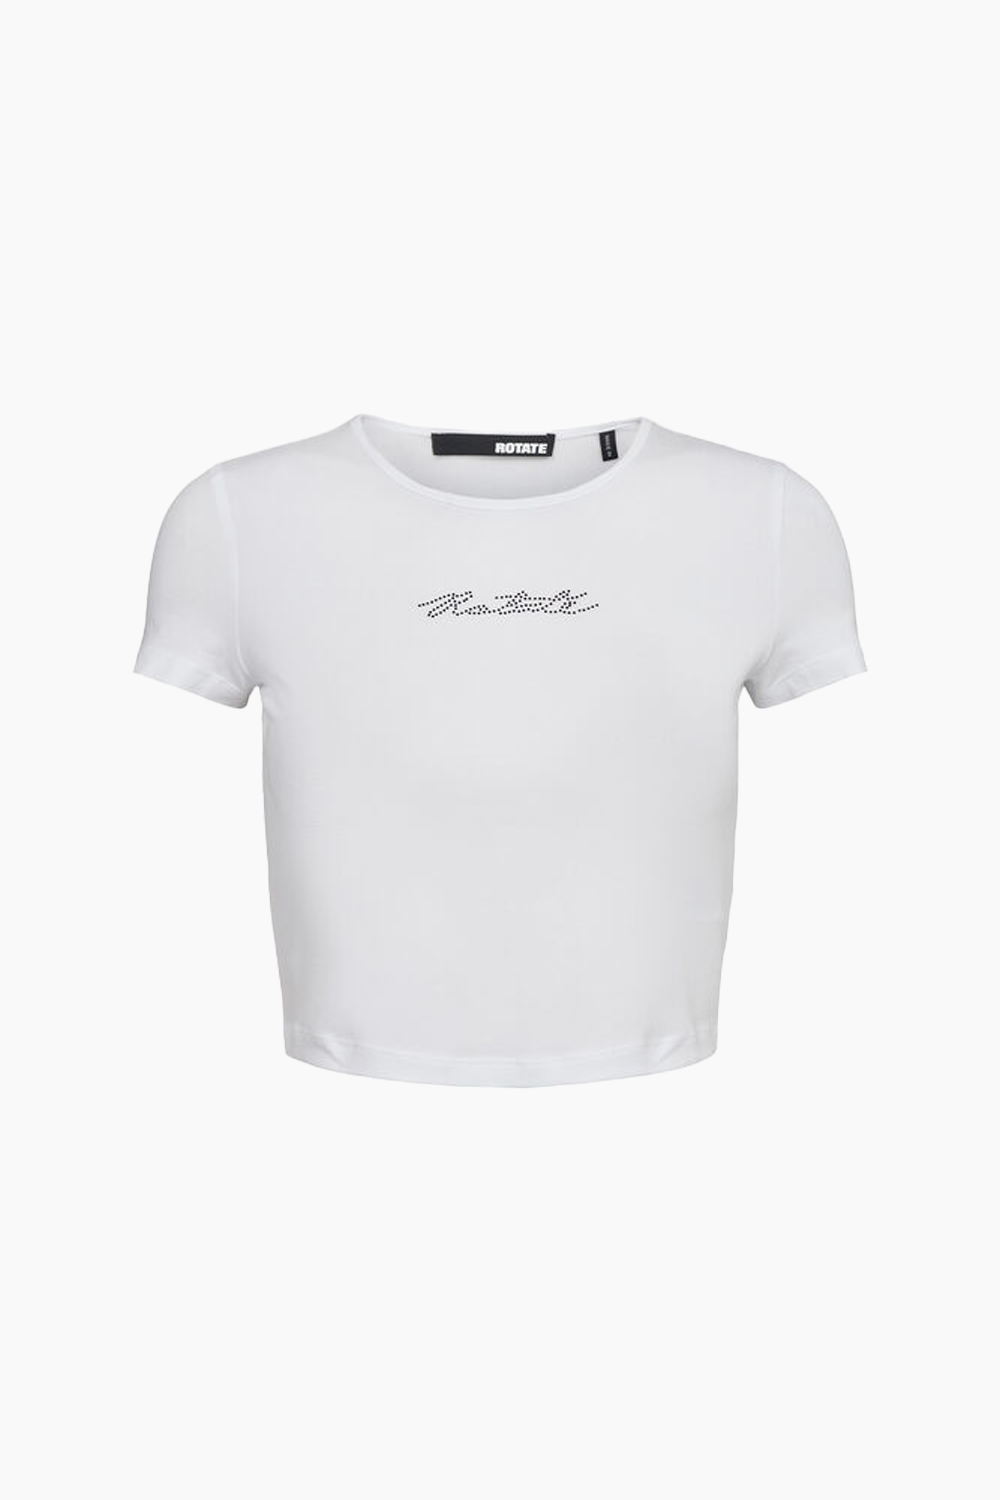 Billede af Cropped T-shirt - Bright White - ROTATE - Hvid S